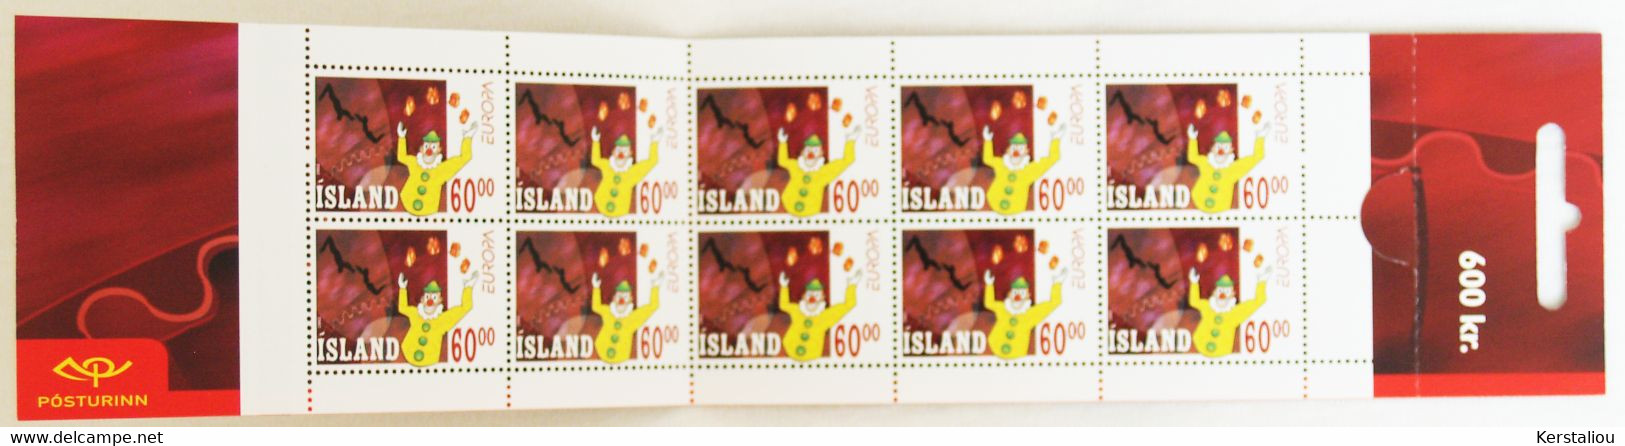 EUROPA 2002 – 2 CARNETS DE 10 TIMBRES – N° 4 Et 5 – POSTE ISLANDAISE - Booklets